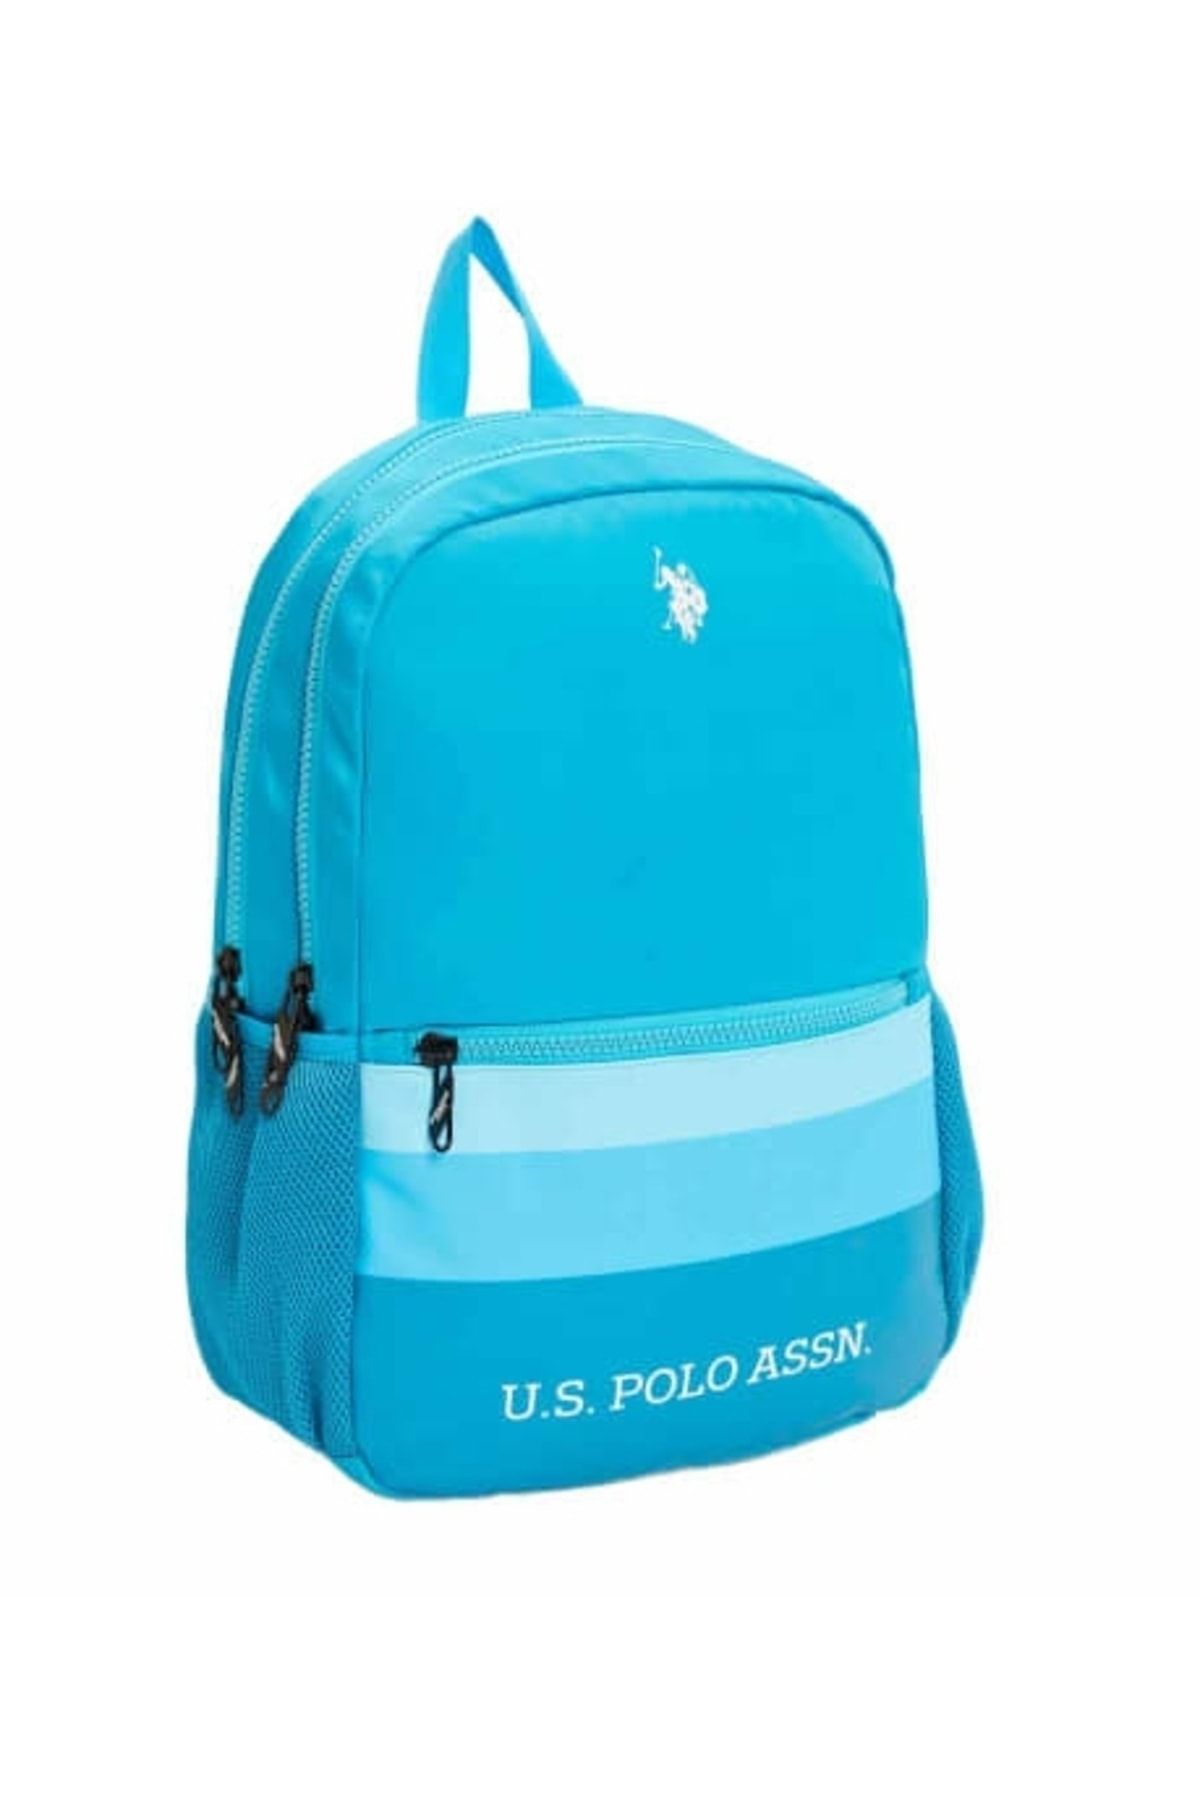 U.S. Polo Assn. U.S. Polo Mavi Sırt Çantası PLÇAN23144